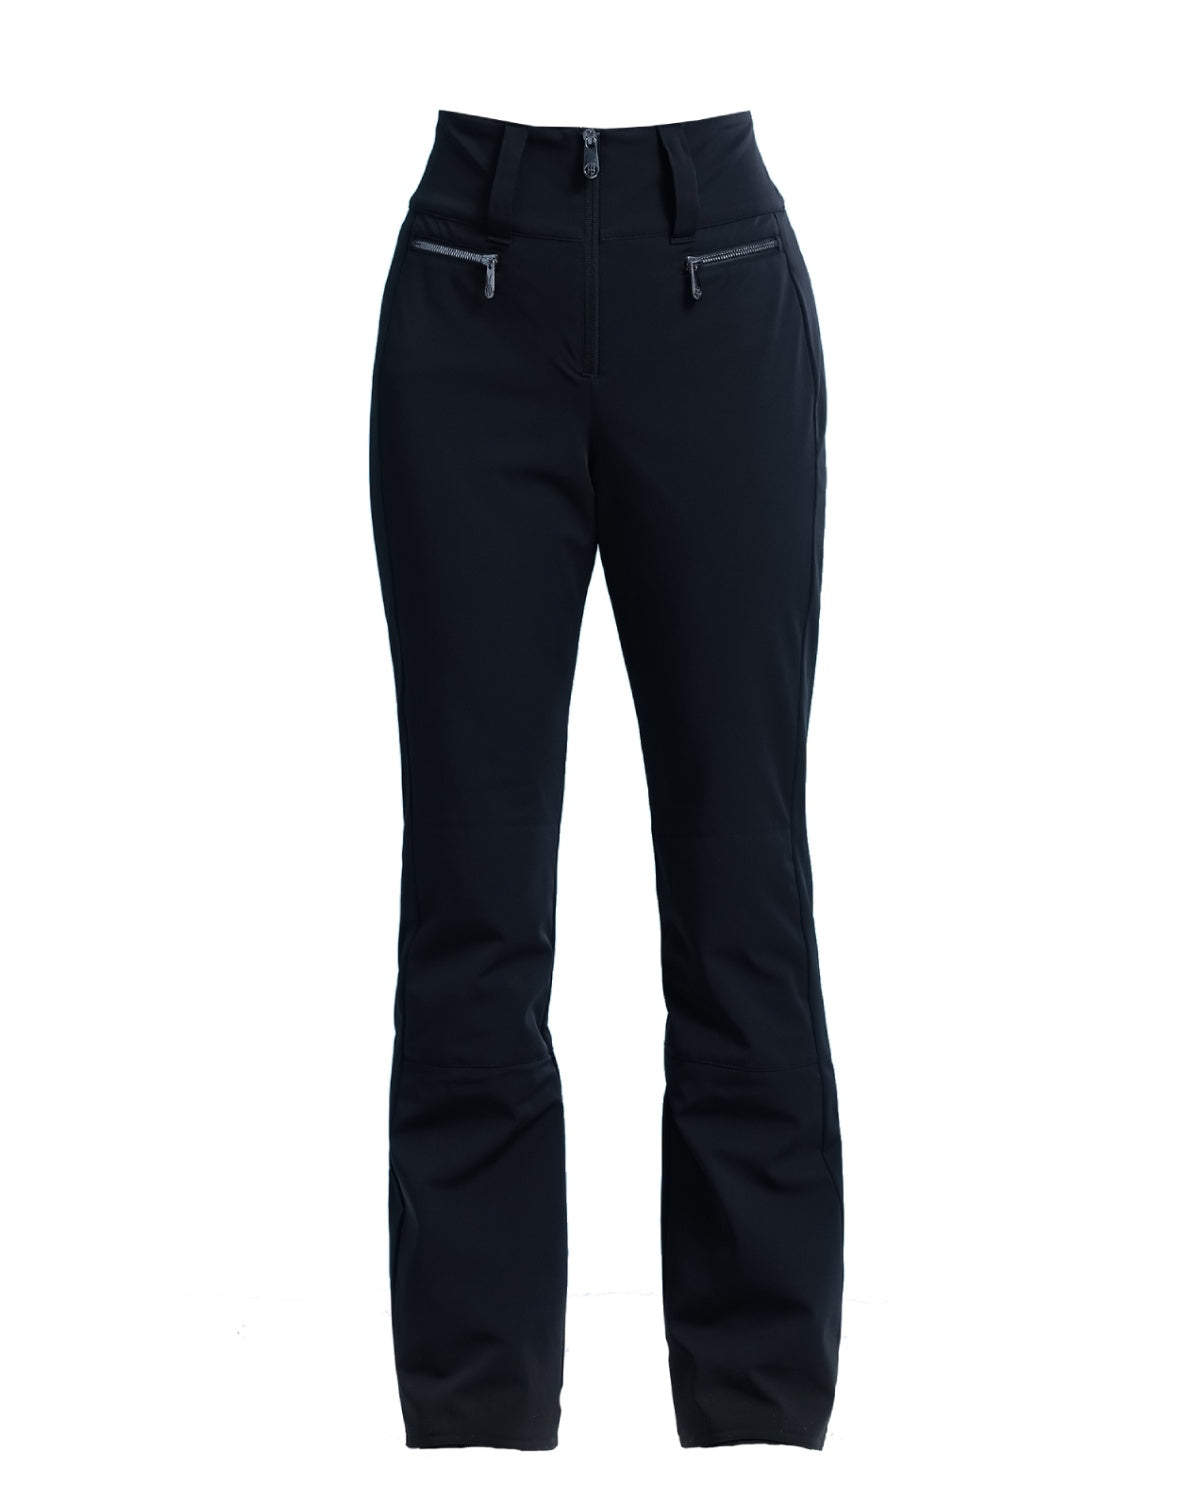 Poivre Blanc, Luxe Sport Line W23-0822-WO softshell ski pants women Almond  Brown / Black black, brown